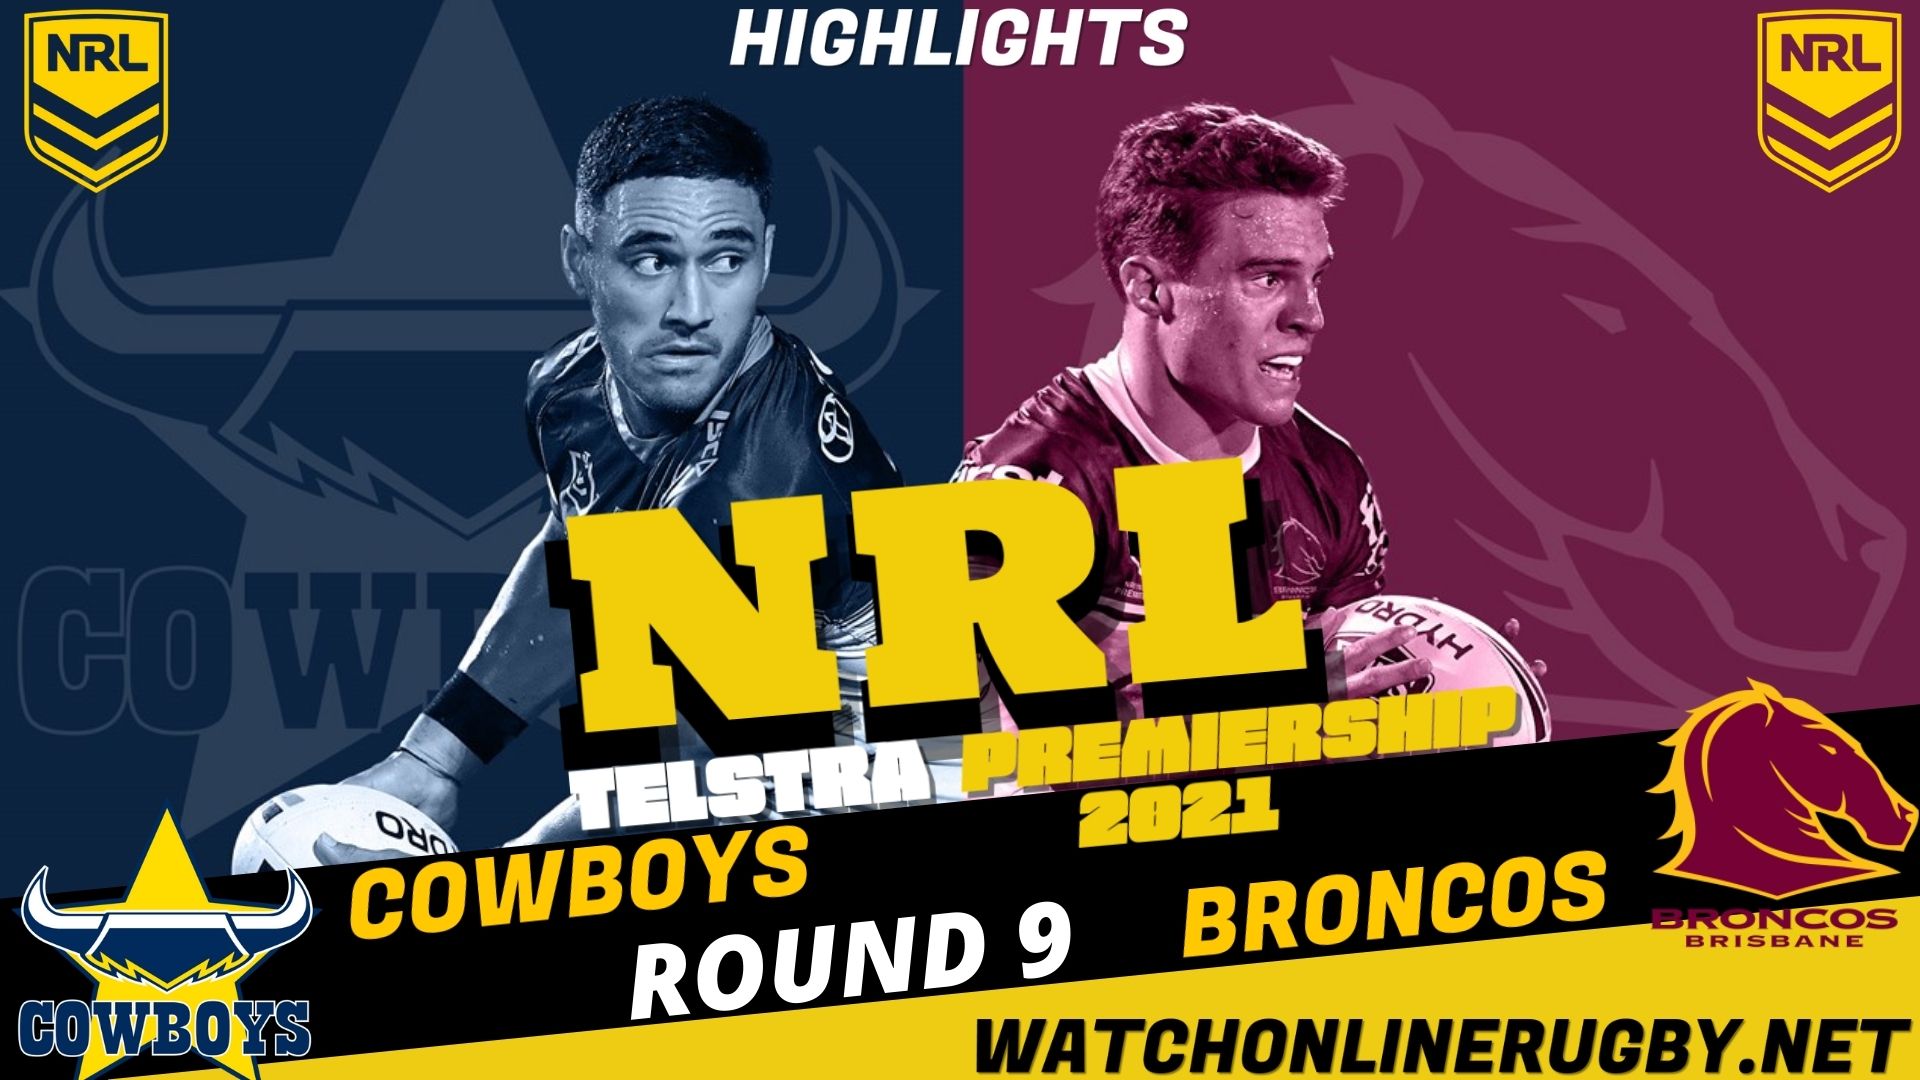 Cowboys Vs Broncos Highlights RD 9 NRL Rugby